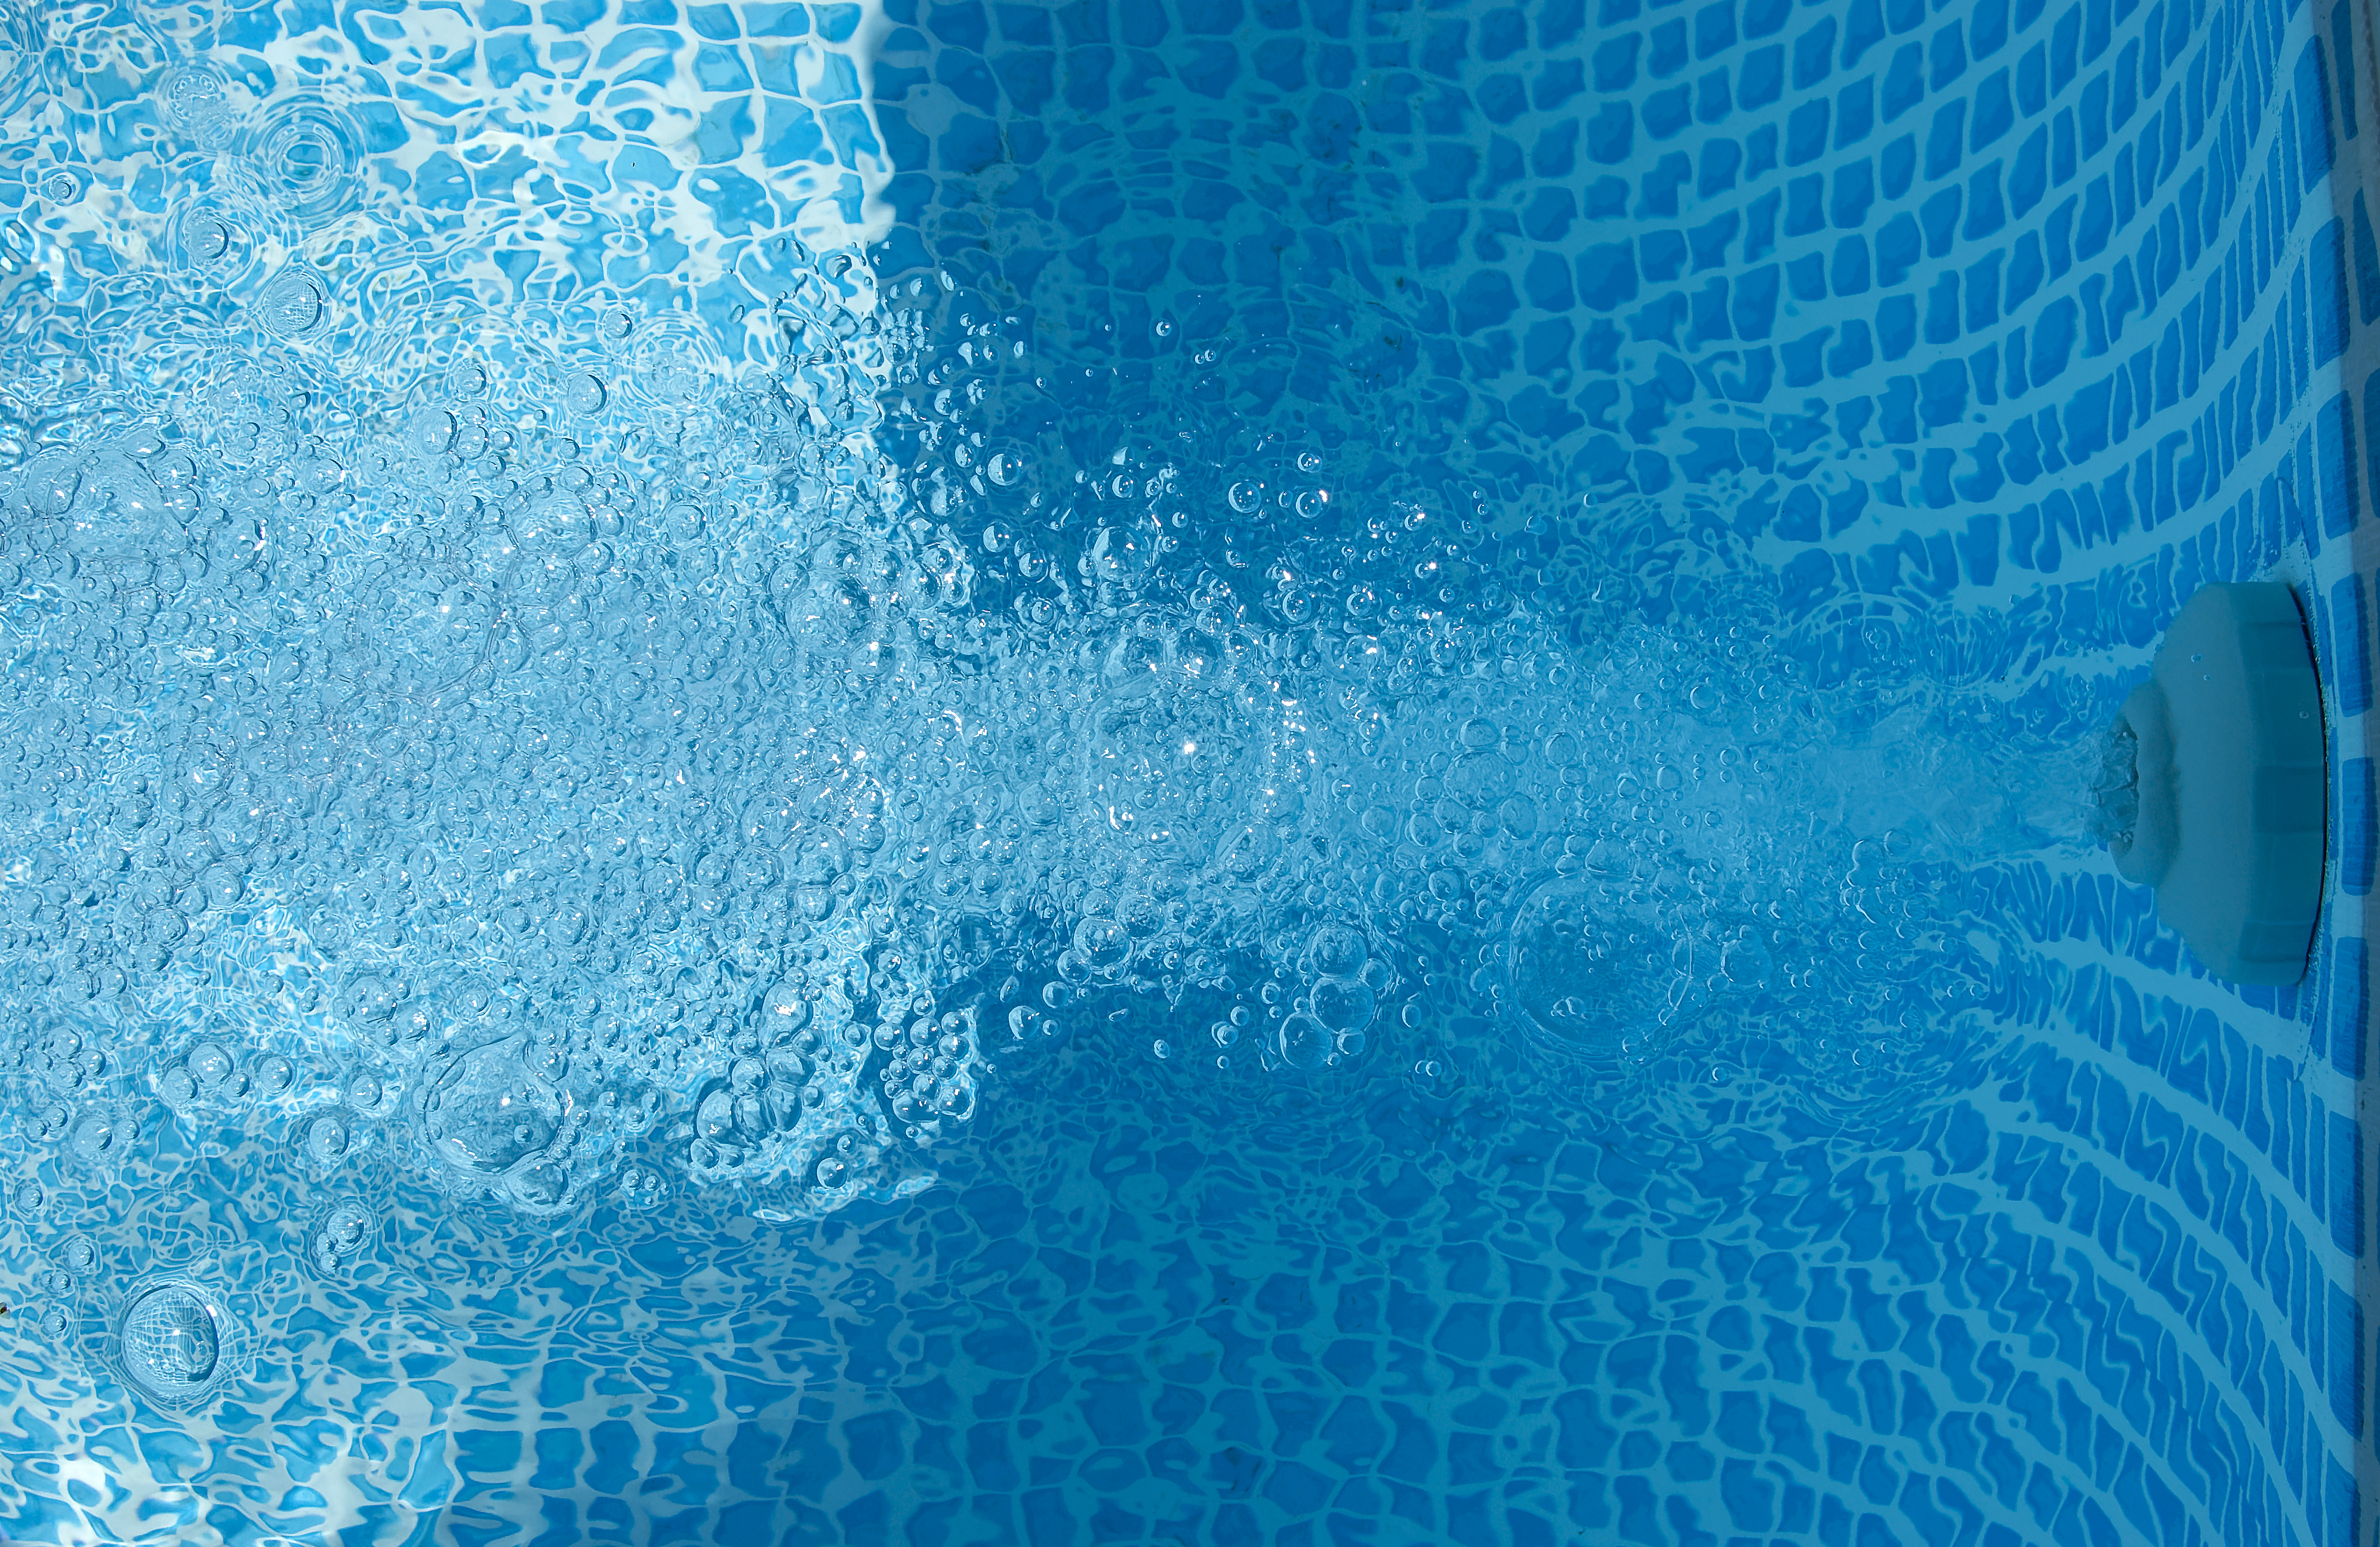 Les différents systèmes et méthodes pour effectuer la filtration d’une piscine offrent une large gamme d’efficacité comme de niveau d’entretien. © kama17, Flickr, cc by nc 2.0